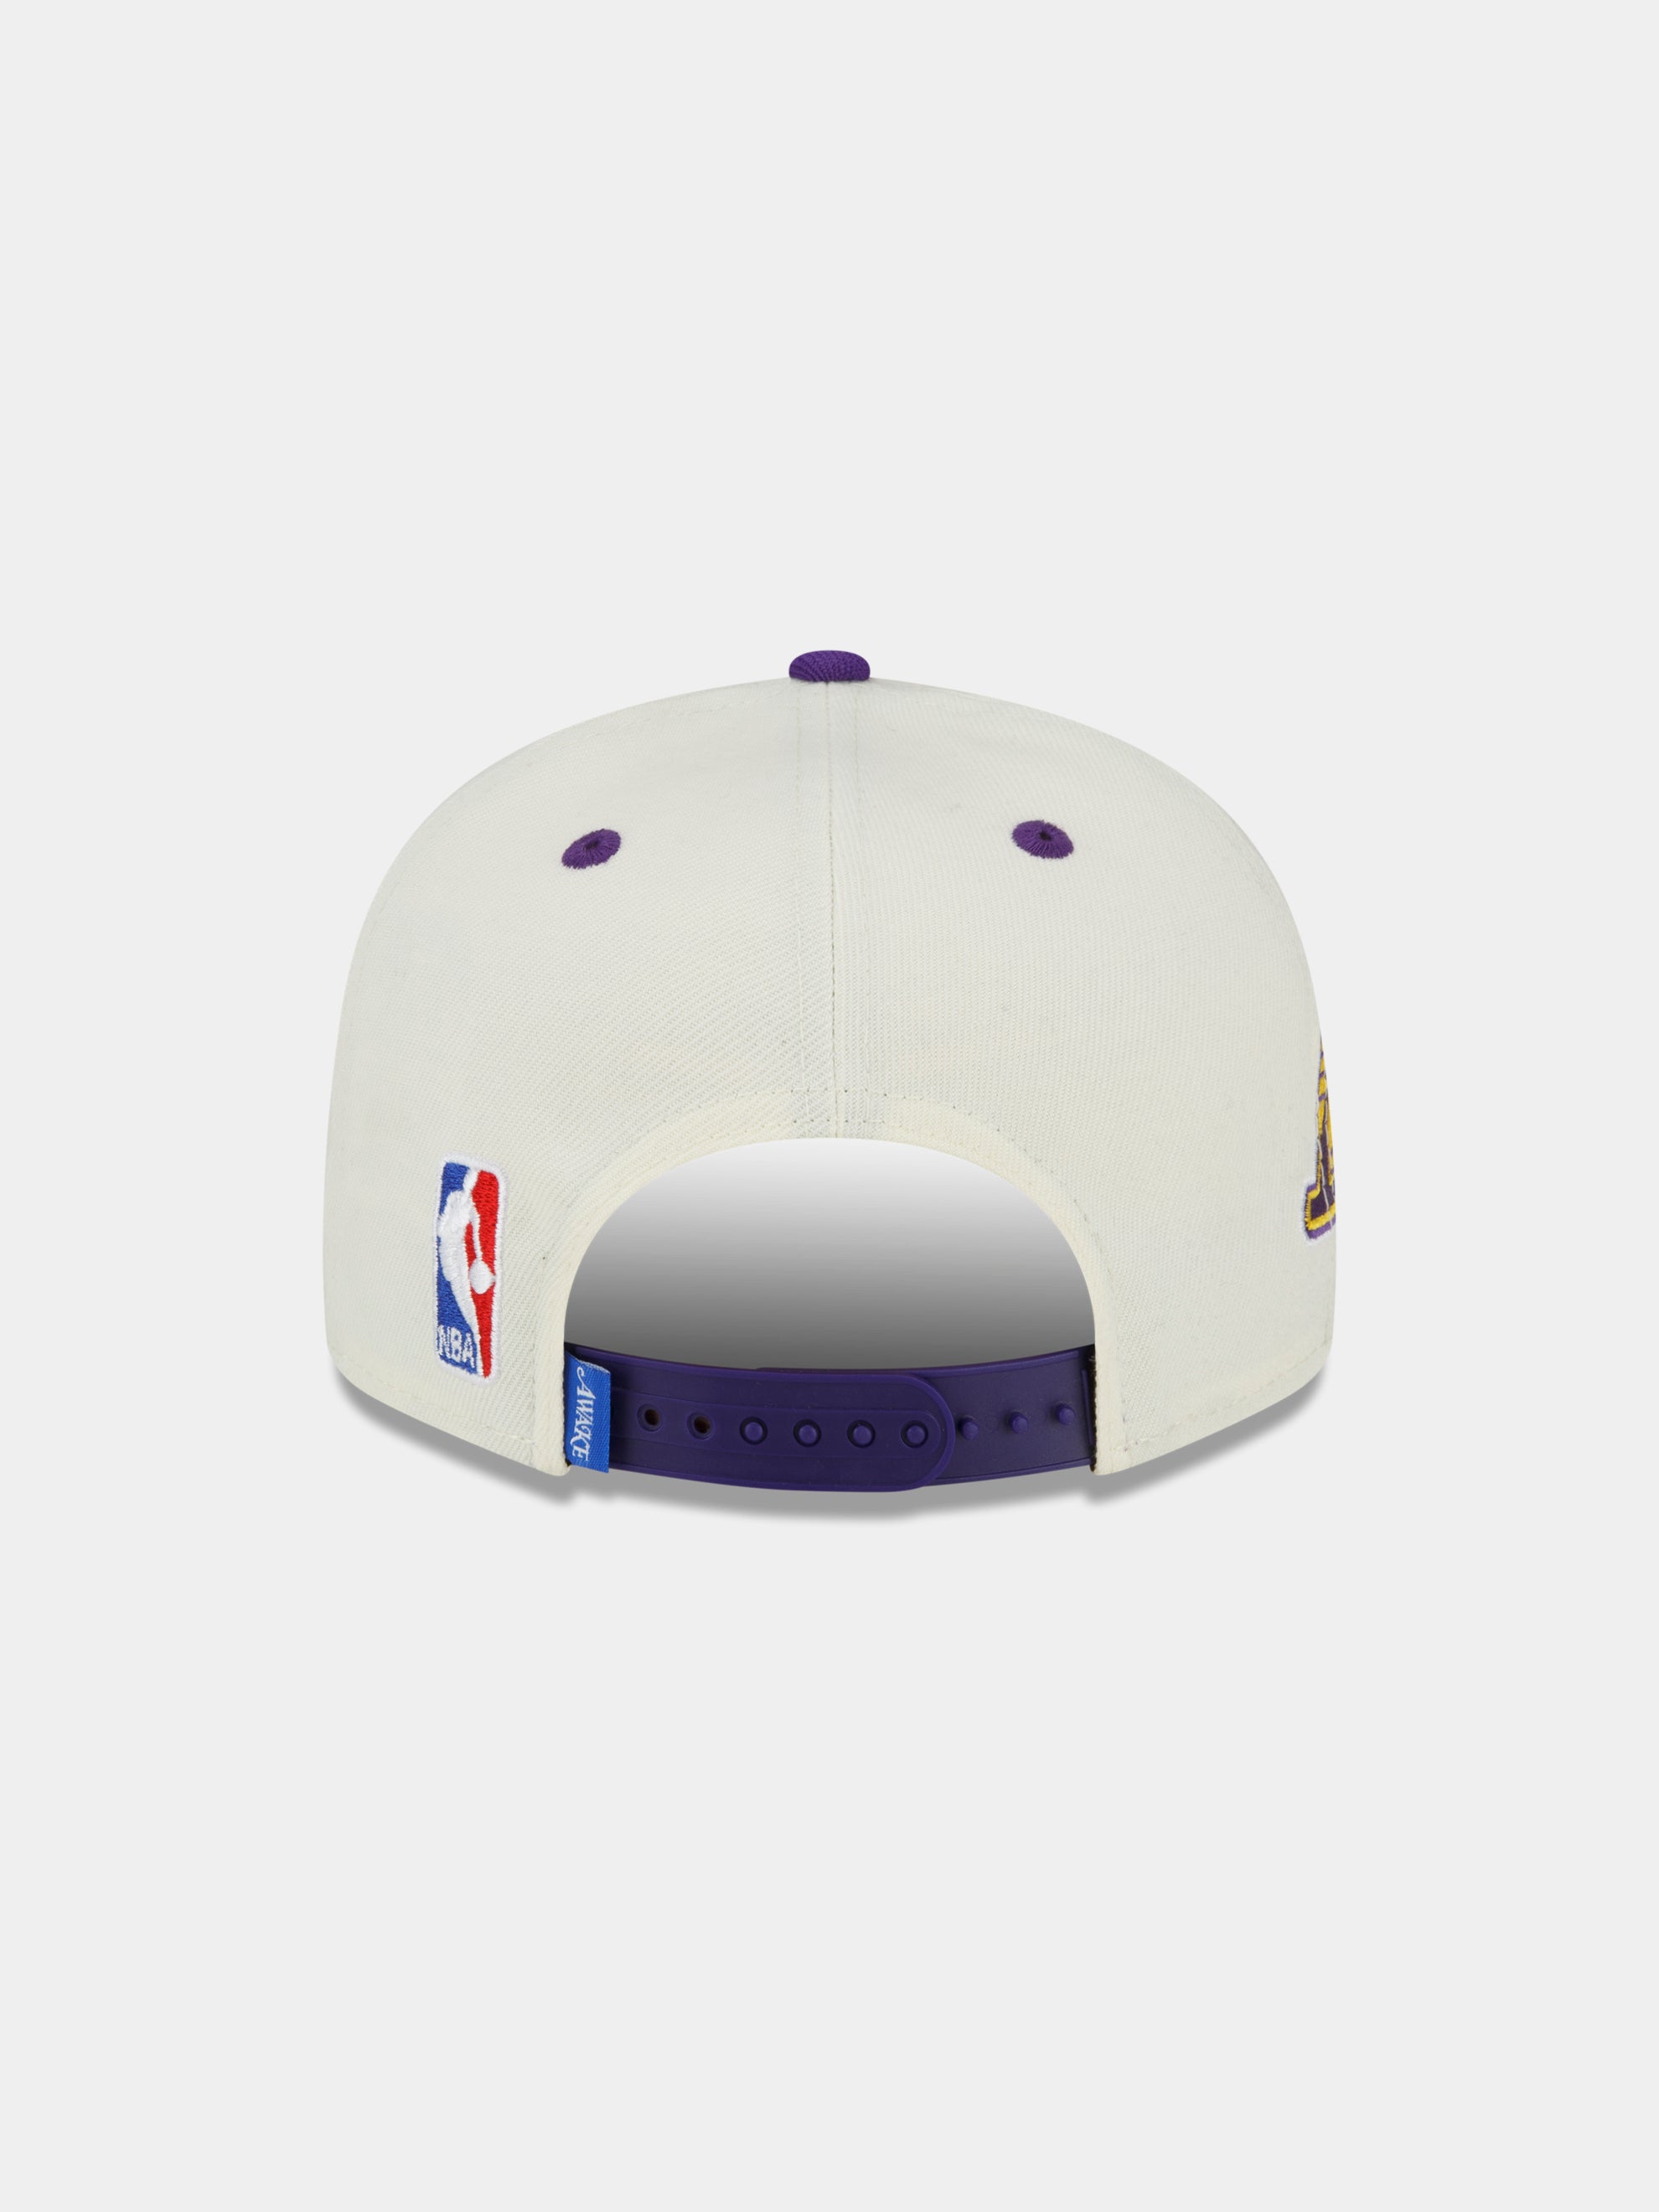 Shop Lakers Cap New Era online